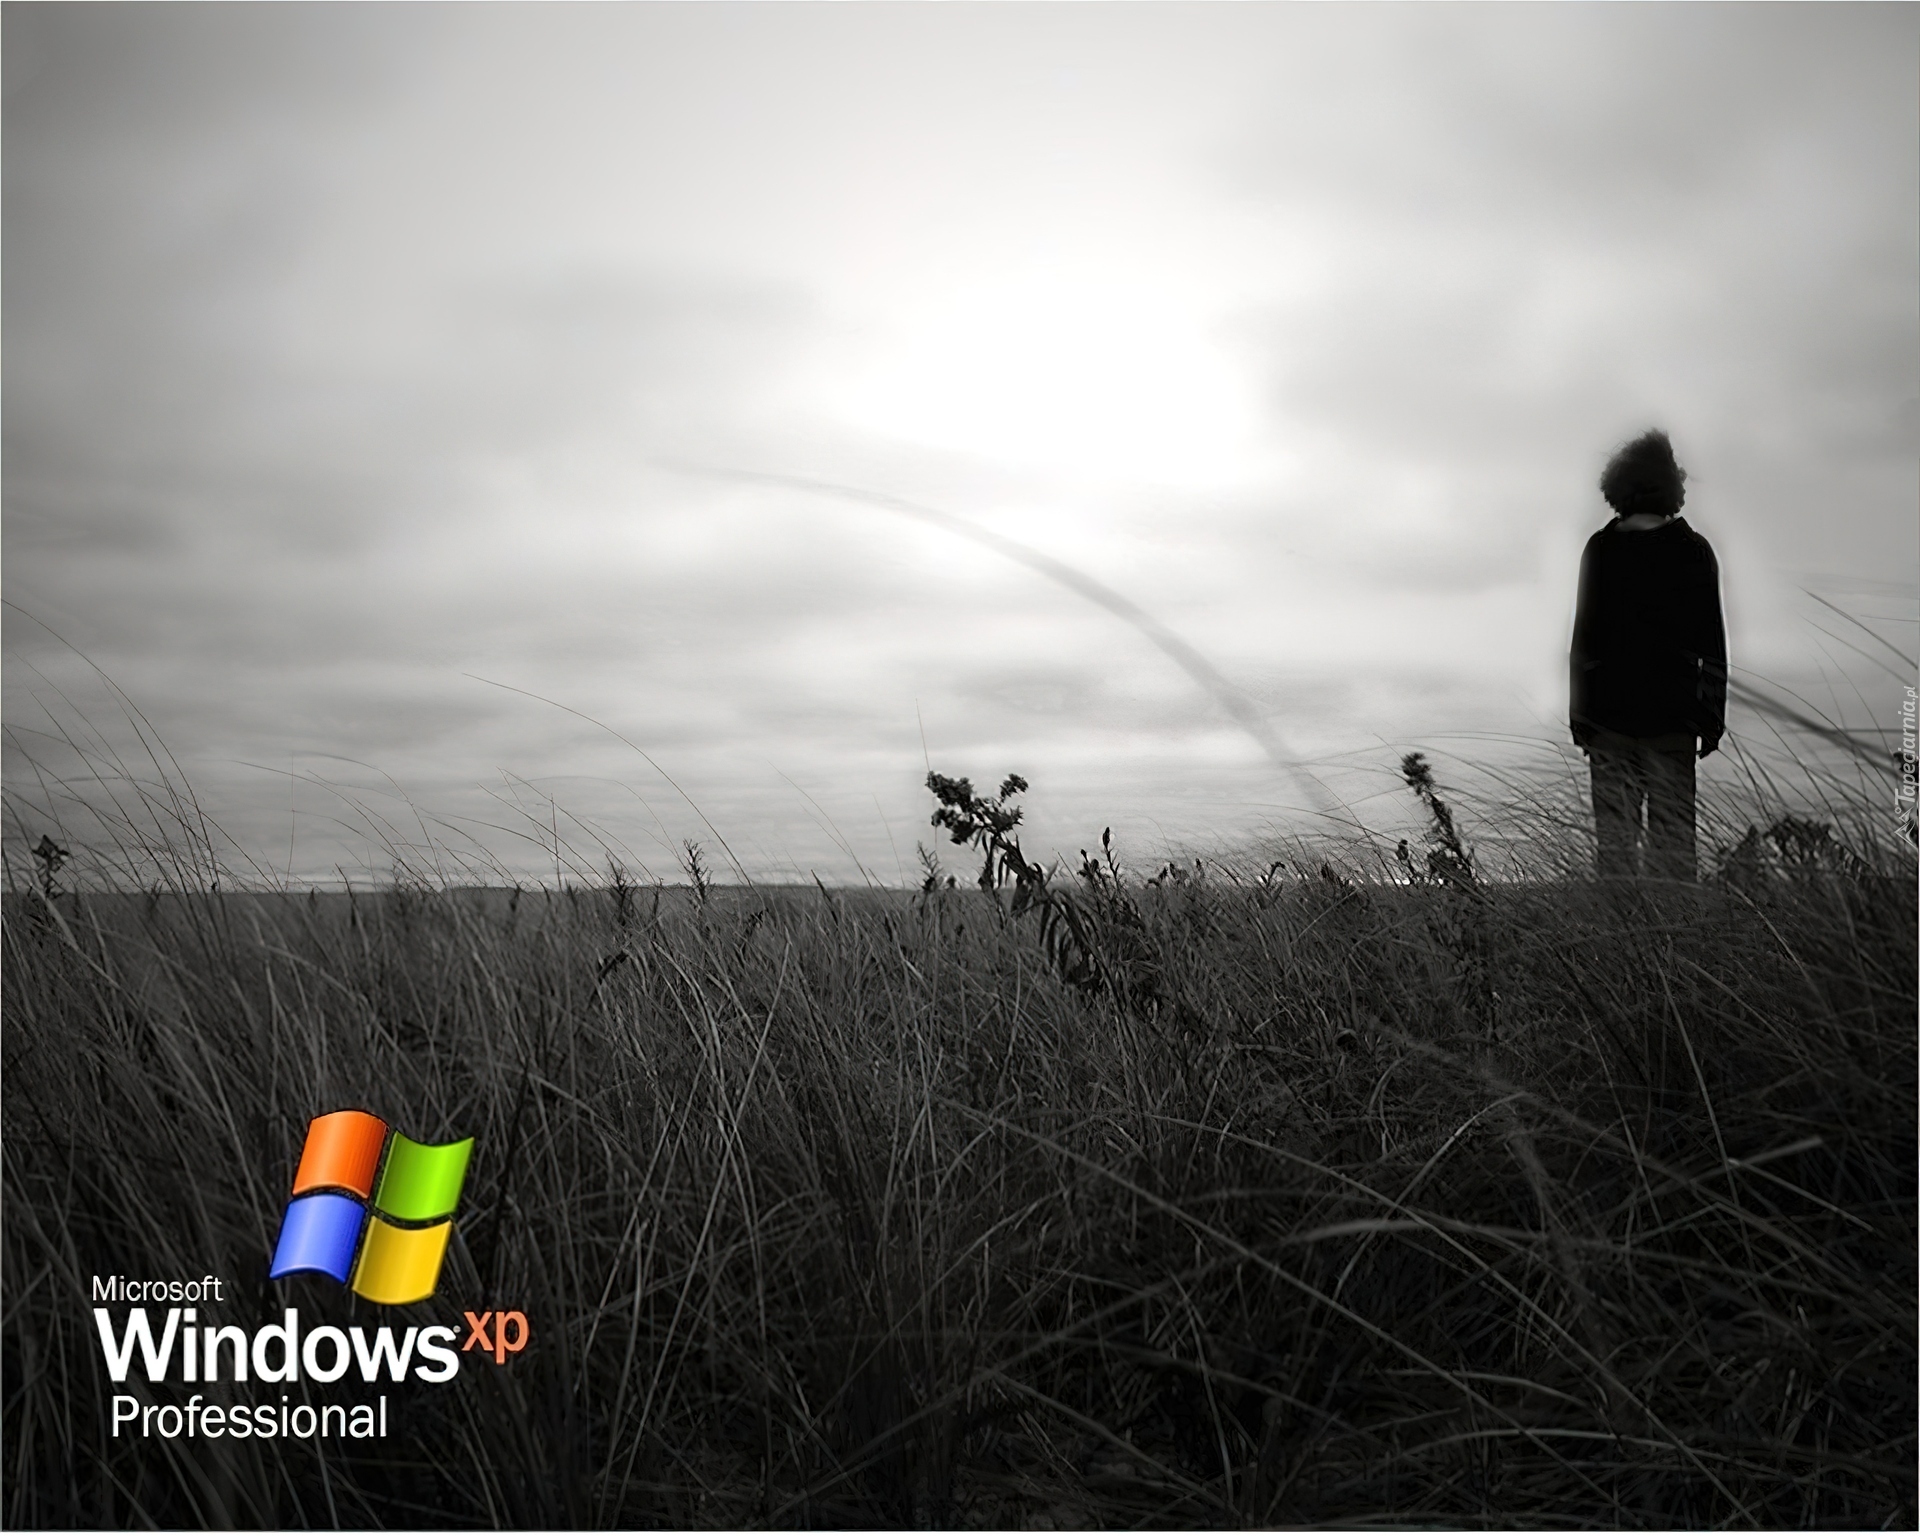 Windows XP, Professional, Człowiek, łąka